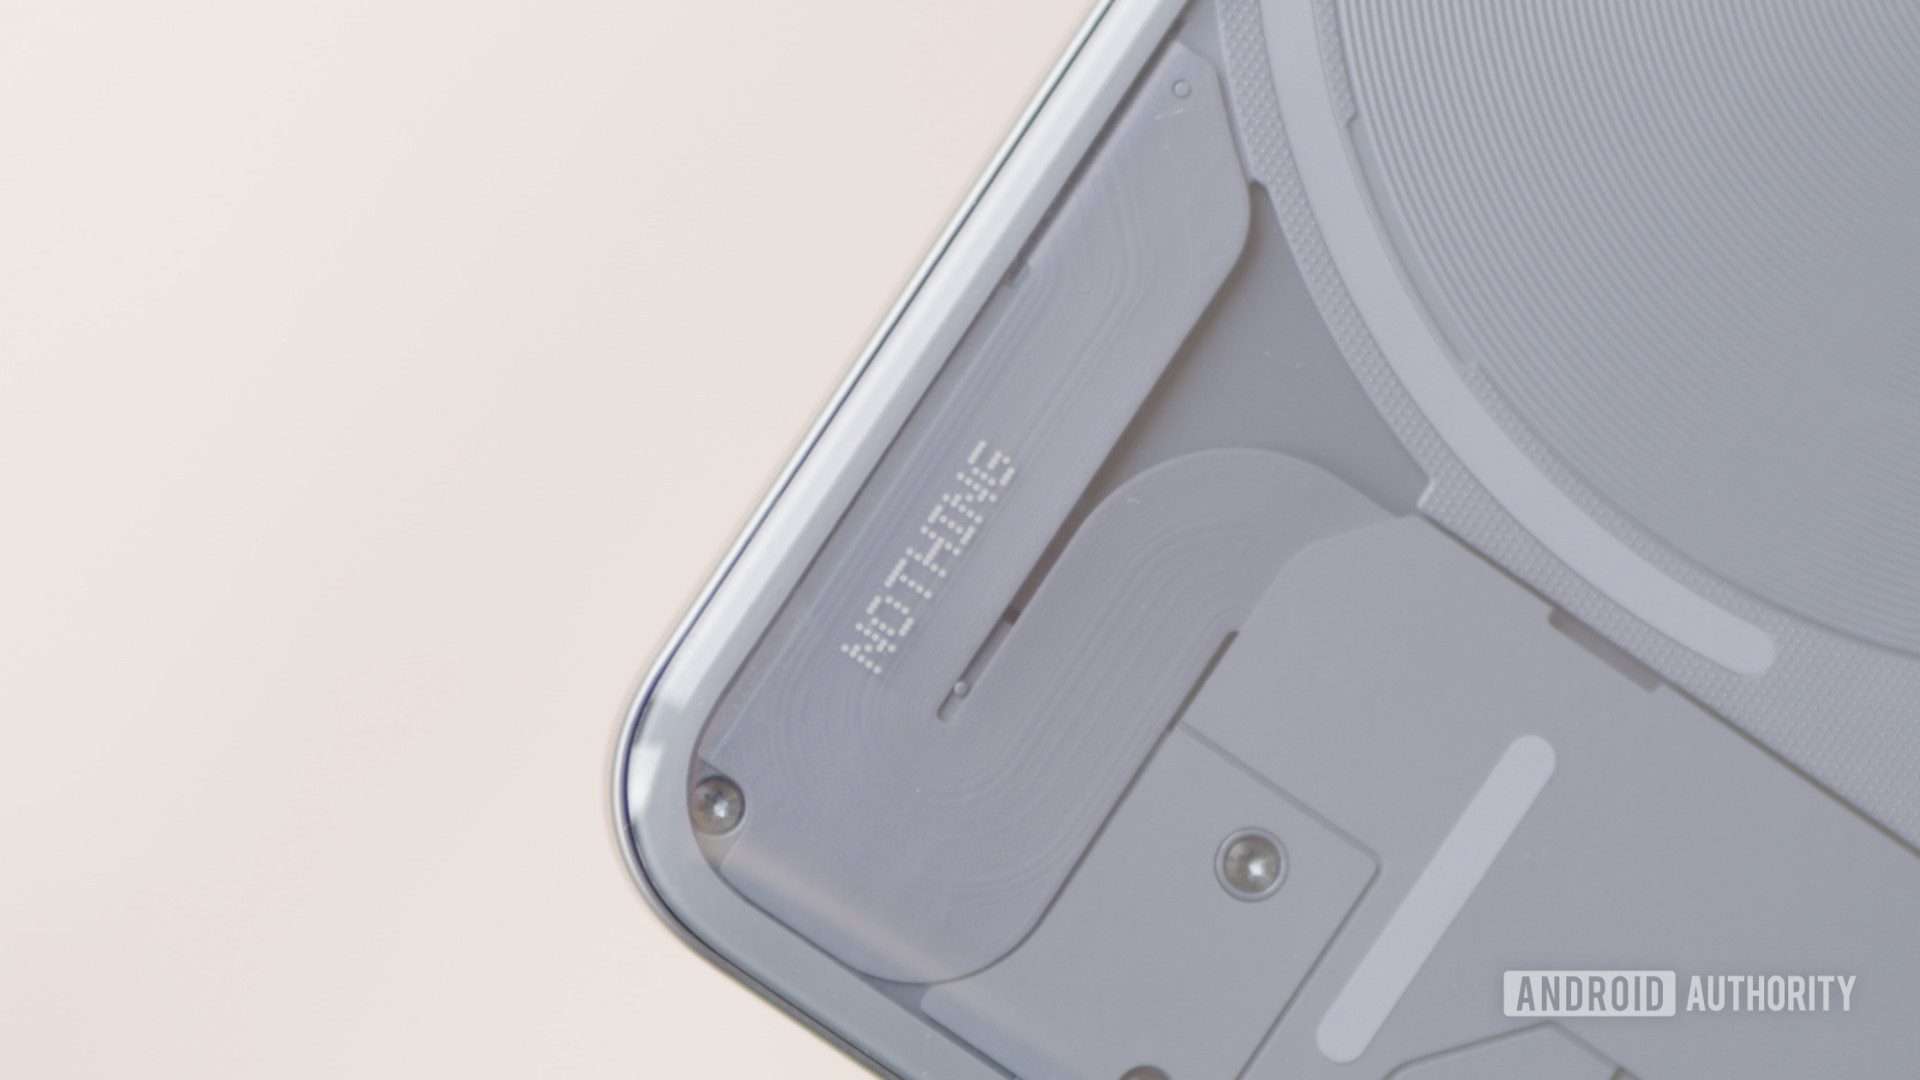 Hiçbir Şey Telefon 2a sızıntısı yeni tasarımı ve şirket için bir ilki ortaya koyuyor